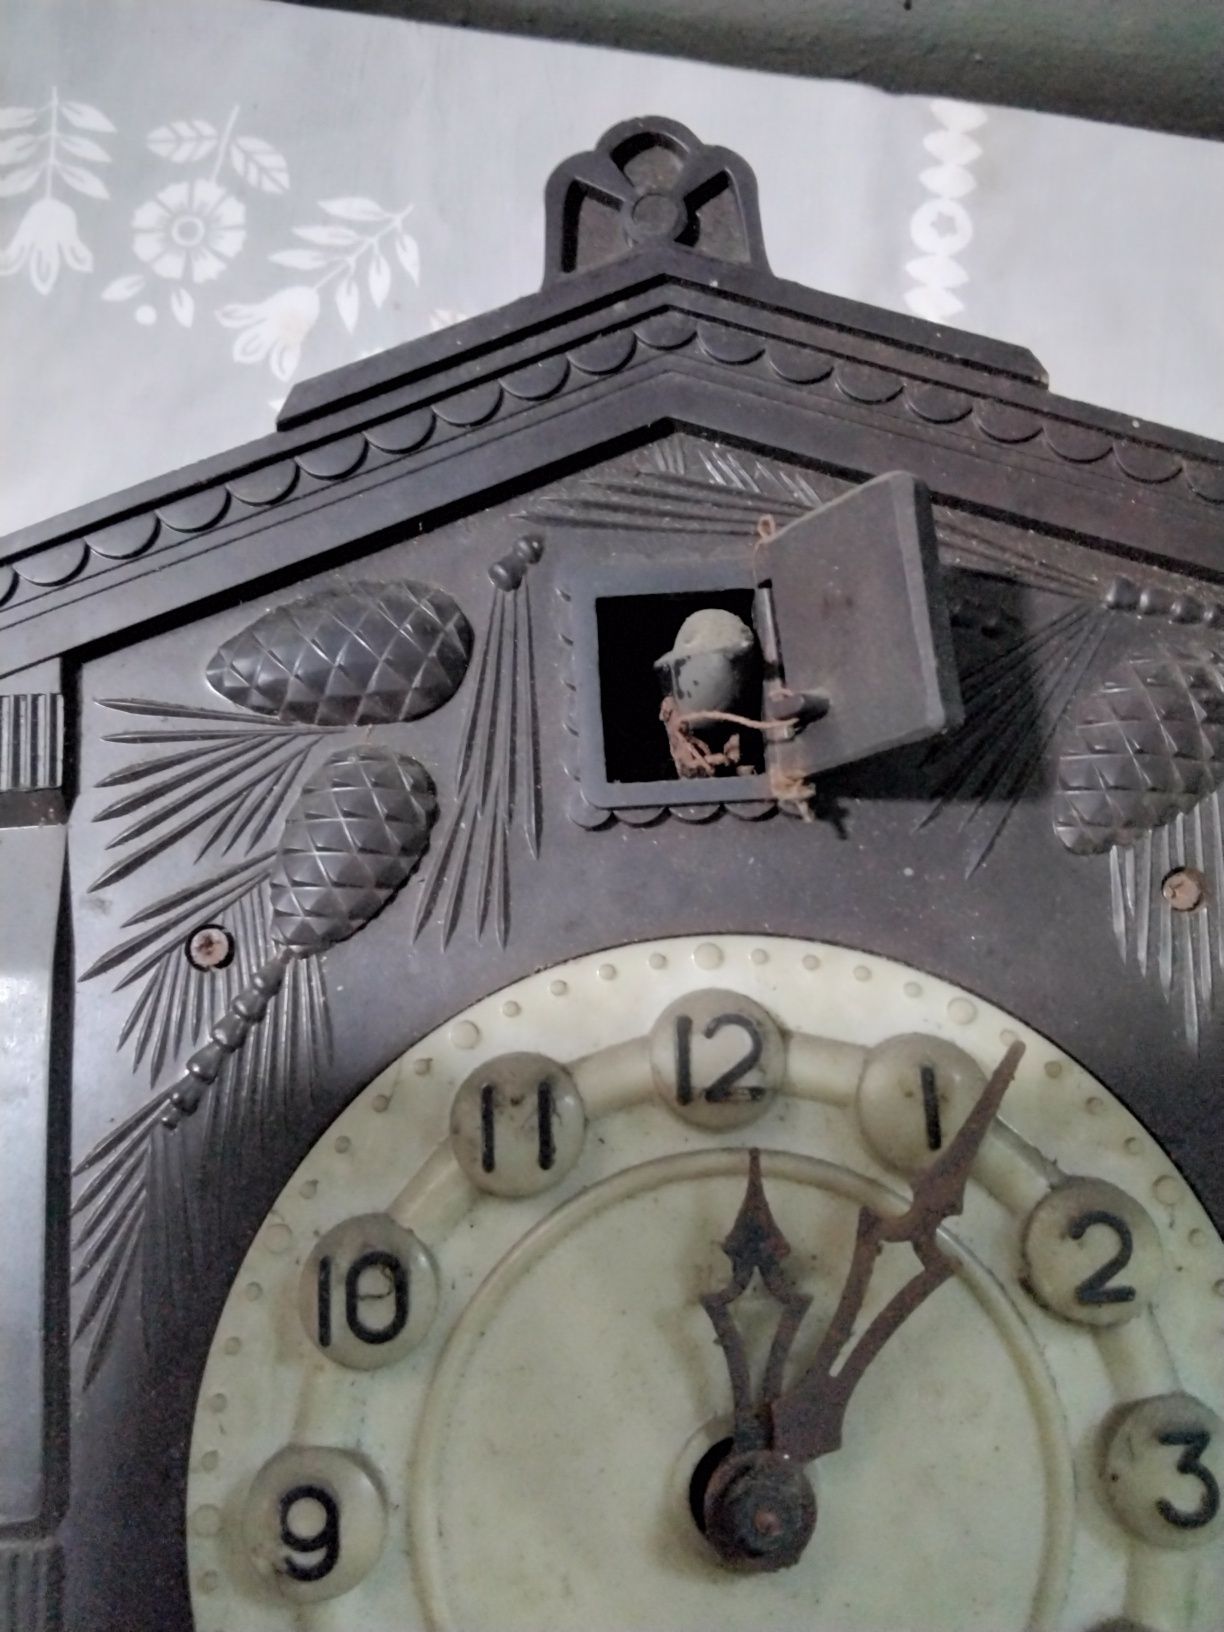 Stary zegar z kukułką